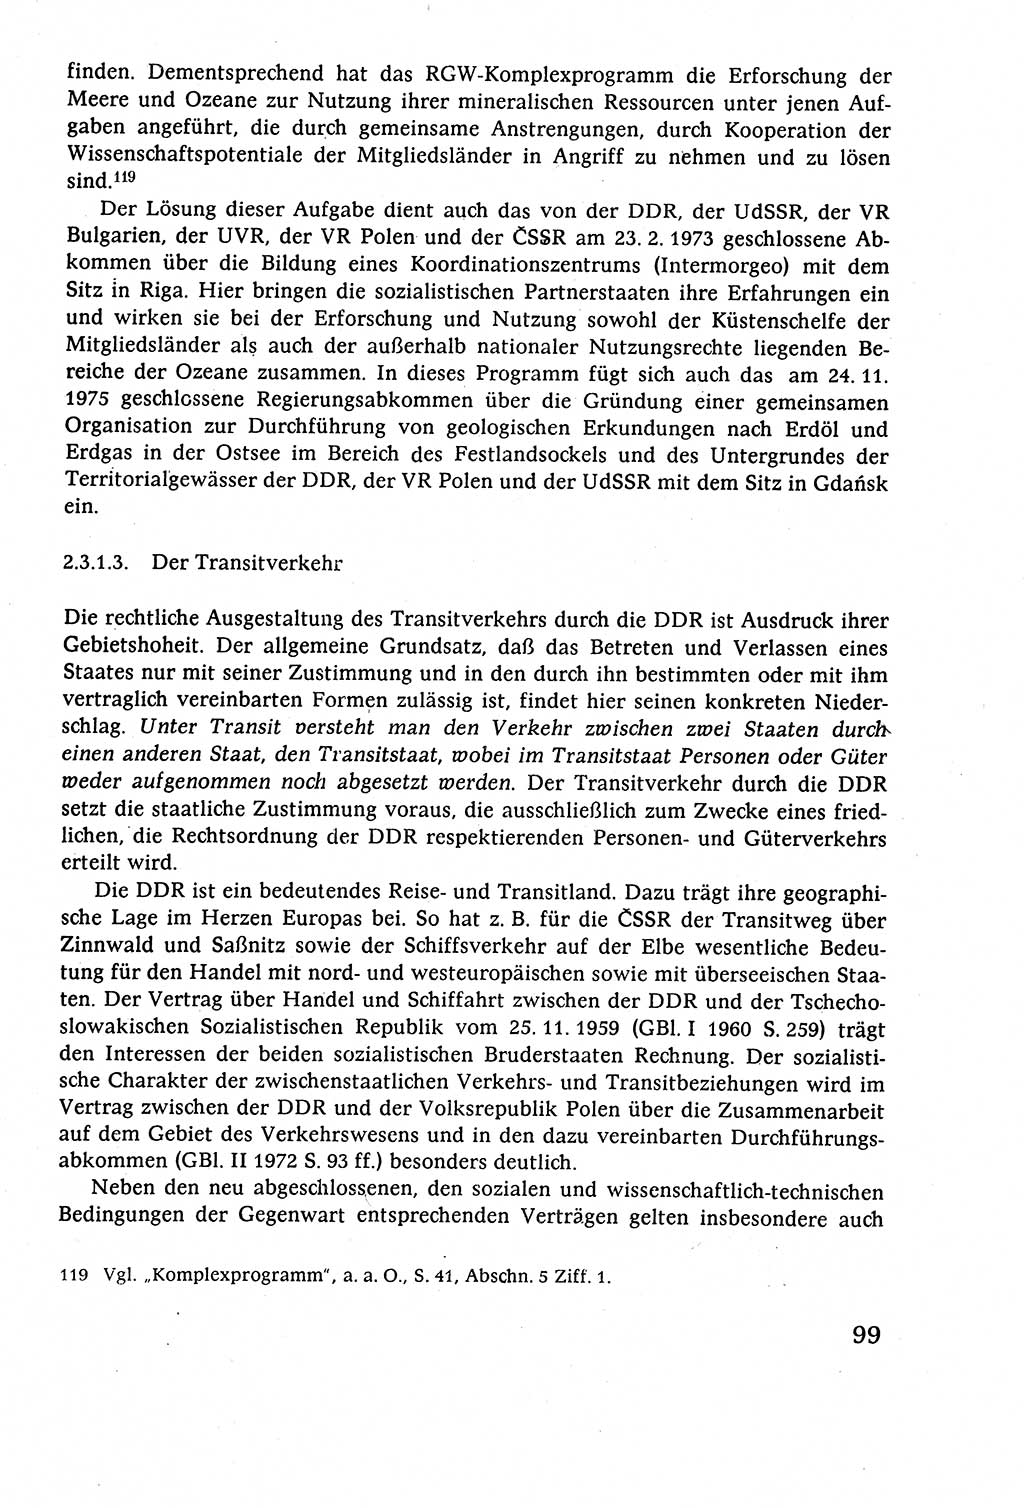 Staatsrecht der DDR (Deutsche Demokratische Republik), Lehrbuch 1977, Seite 99 (St.-R. DDR Lb. 1977, S. 99)